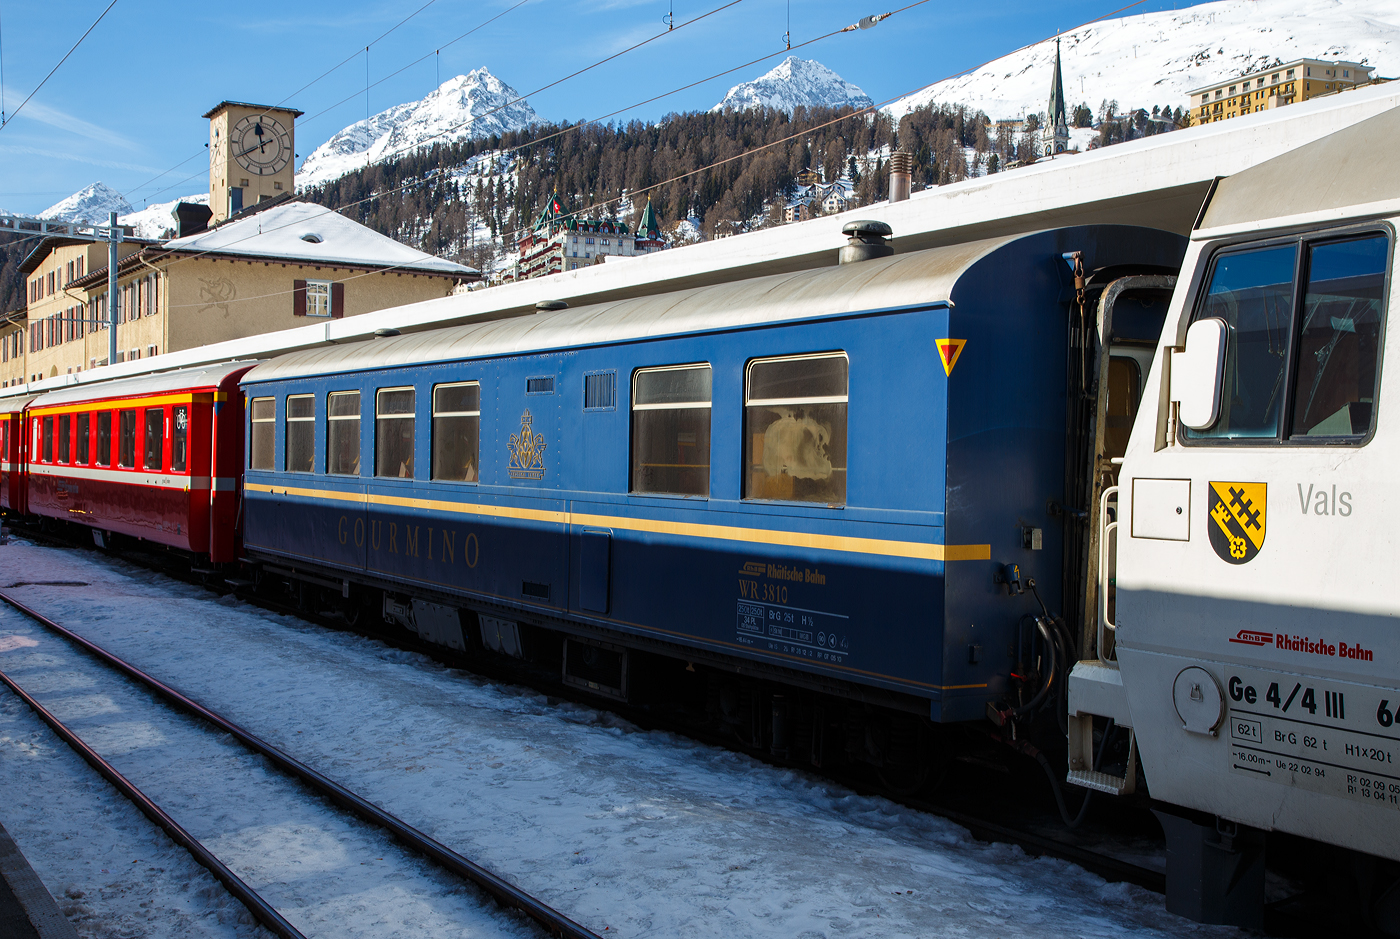 Der RhB „Gourmino“ Speisewagen WR 3810, ex RhB Dr4ü 3810, ex Mitropa Dr4ü 10, am 20 Februar 2017 eingereiht in einem Personenzug im RhB Bahnhof St. Moritz.

In den Jahren 1929 und 1930 beschaffte die Mitropa drei als Dr4ü 10-12 bezeichnete Speisewagen für den Einsatz in den Luxuszügen der Rhätischen Bahn. Diese Fahrzeuge liefen nicht nur im Glacier Express, sondern auch im Engadin Express und auf Verbindungen nach Davos. Lieferant war die Schweizerische Waggons- und Aufzügefabrik Schlieren (SWS). 1949 ersteigerte die RhB die Speisewagen von der Mitropa.
Die Bezeichnung Dr4ü 10-12 wurde 1956 in Dr4ü 3810-3812 und später in WR 3810-3812 geändert.

WR 3812 wurde 1974 versuchsweise modernisiert und mit Mikrowellenherden ausgerüstet. WR 3810-3811 hingegen wurden 1982 bzw. 1983 als nostalgische Speisewagen hergerichtet und mit einer neuen Kücheneinrichtung versehen, die eine Zubereitung frischer Speisen gestattet. 

1996 wurde WR 3812 generalüberholt, wobei die RhB auch die Inneneinrichtung weitgehend in den Originalzustand zurückversetzte. Bei dieser Gelegenheit tauschte der Wagen sein rotes gegen ein königsblaues Farbkleid mit großem  Gourmino -Schriftzug ein. Diesen auffälligen Farbton erhielten später ebenfalls WR 3810-3811. Alle drei Wagen wurden inzwischen erneut umlackiert und präsentieren sich heute im noblen Blauton des Alpine Classic Pullman Express (ACPE). Der Gourmino fährt meist auf der spektakulären Albulalinie zwischen Chur und St. Moritz. 

TECHNISCHE DATEN:
Baujahr und Hersteller: 1929 / SWS
Spurweite: 1.000 mm
Anzahl der Achsen: 4
Länge über Puffer: 16.440 mm
Sitzplätze: 34 (keine Stehplätze)
Eigengewicht: 25,0 t
zulässige Geschwindigkeit: 90 km/h
Lauffähig: StN (Stammnetz) / MGB (Matterhorn Gotthard Bahn)  